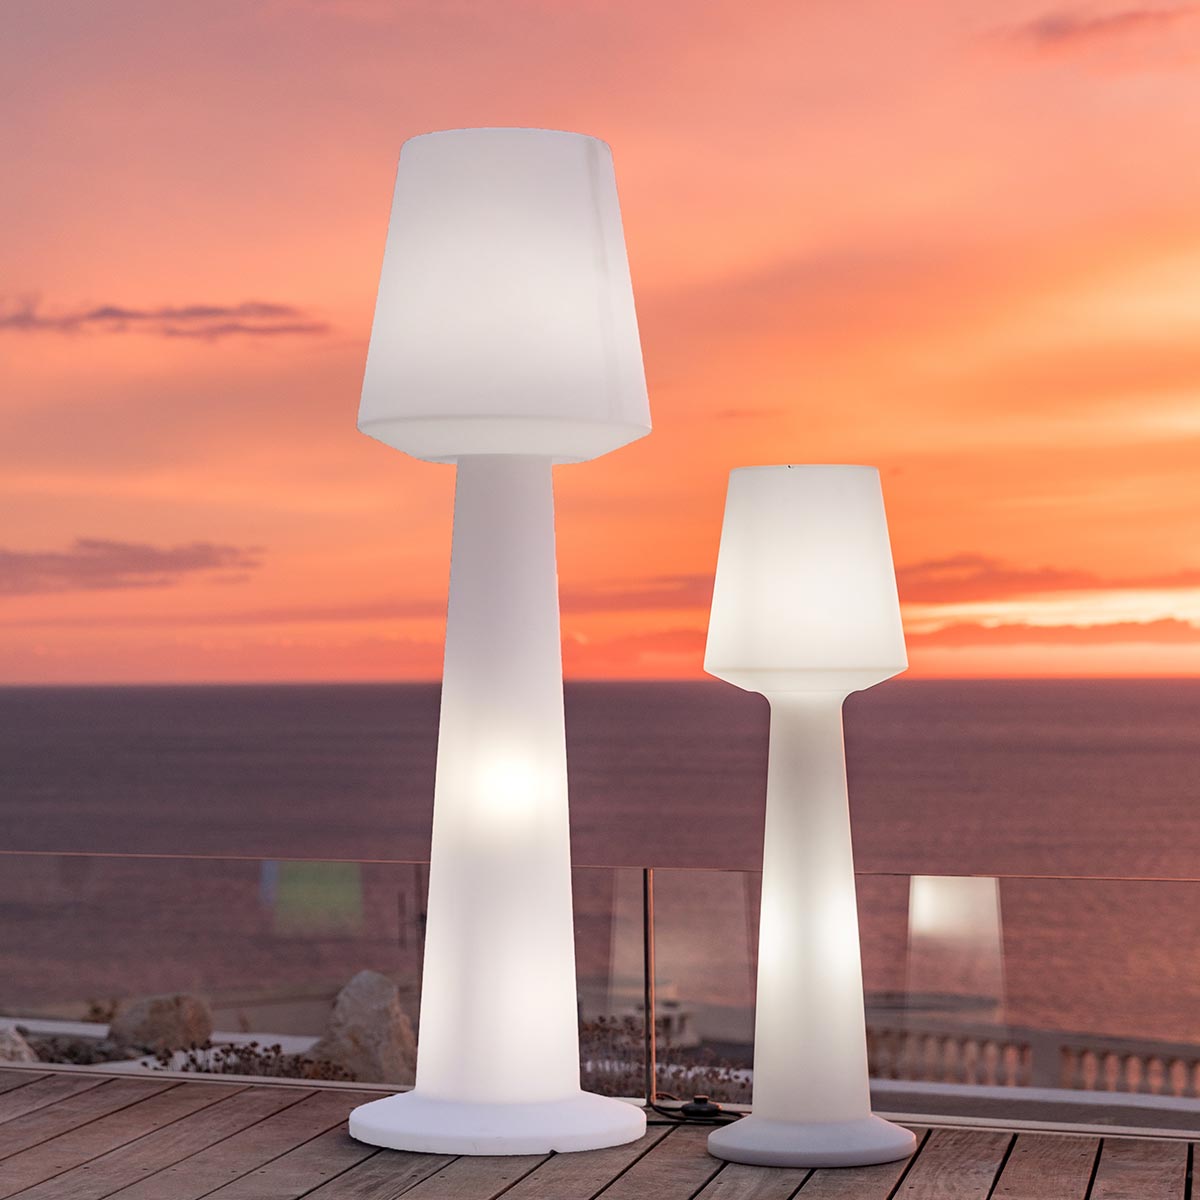 Lampadaire design lumineux filaire pour extérieur éclairage puissant LED blanc AUSTRAL H110cm culot E27 - REDDECO.com